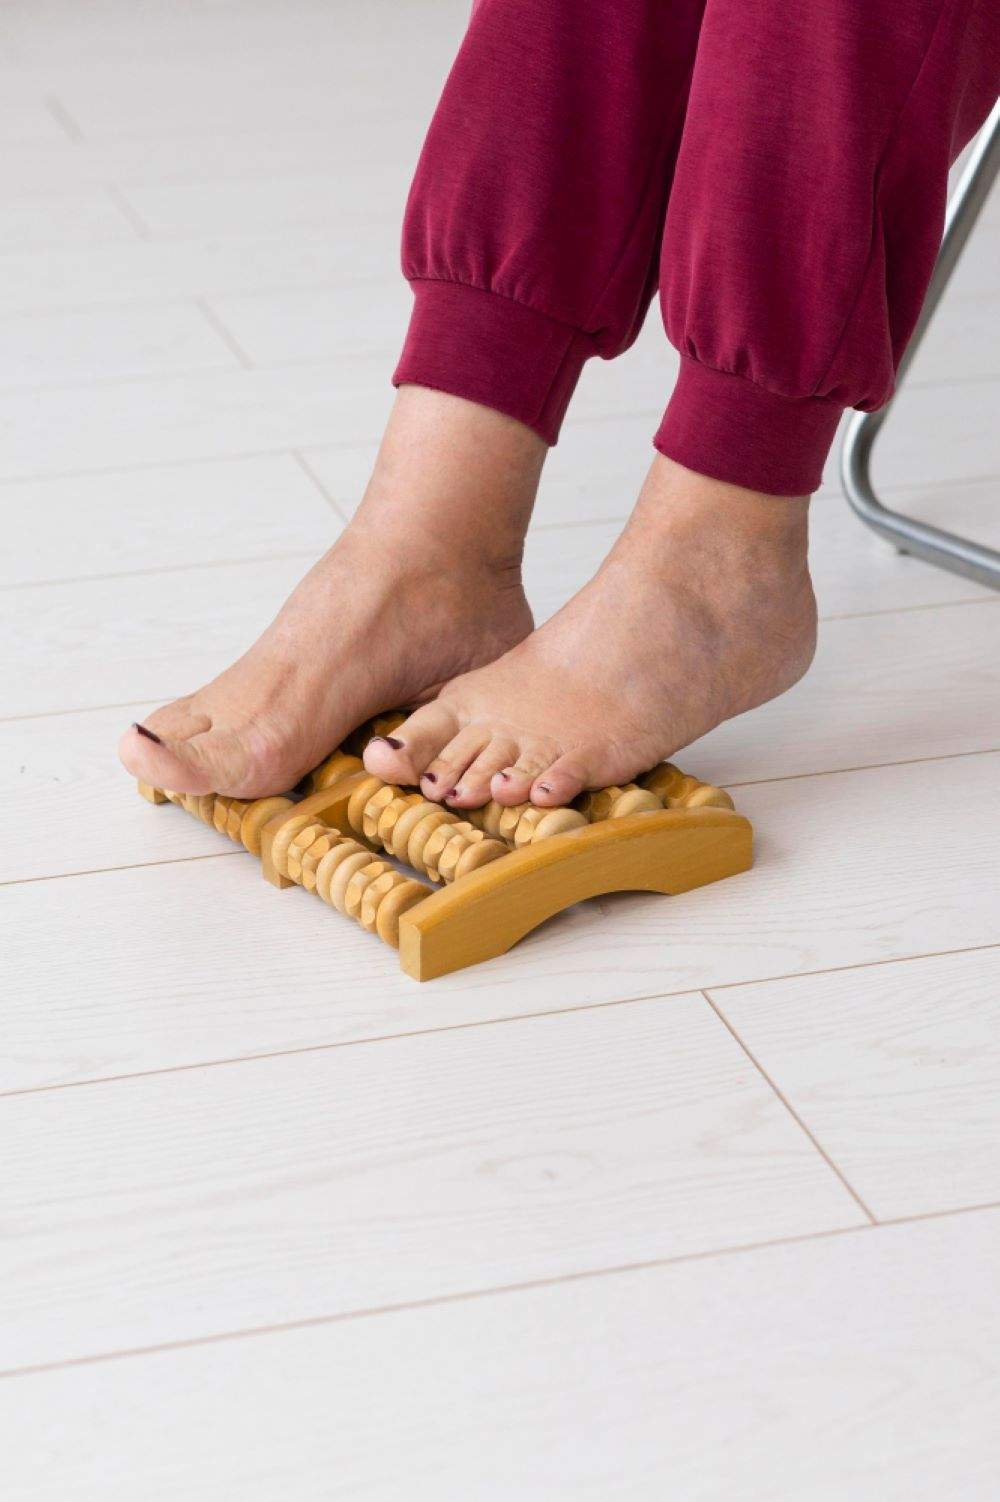 La importancia del cuidado de los pies en las personas mayores